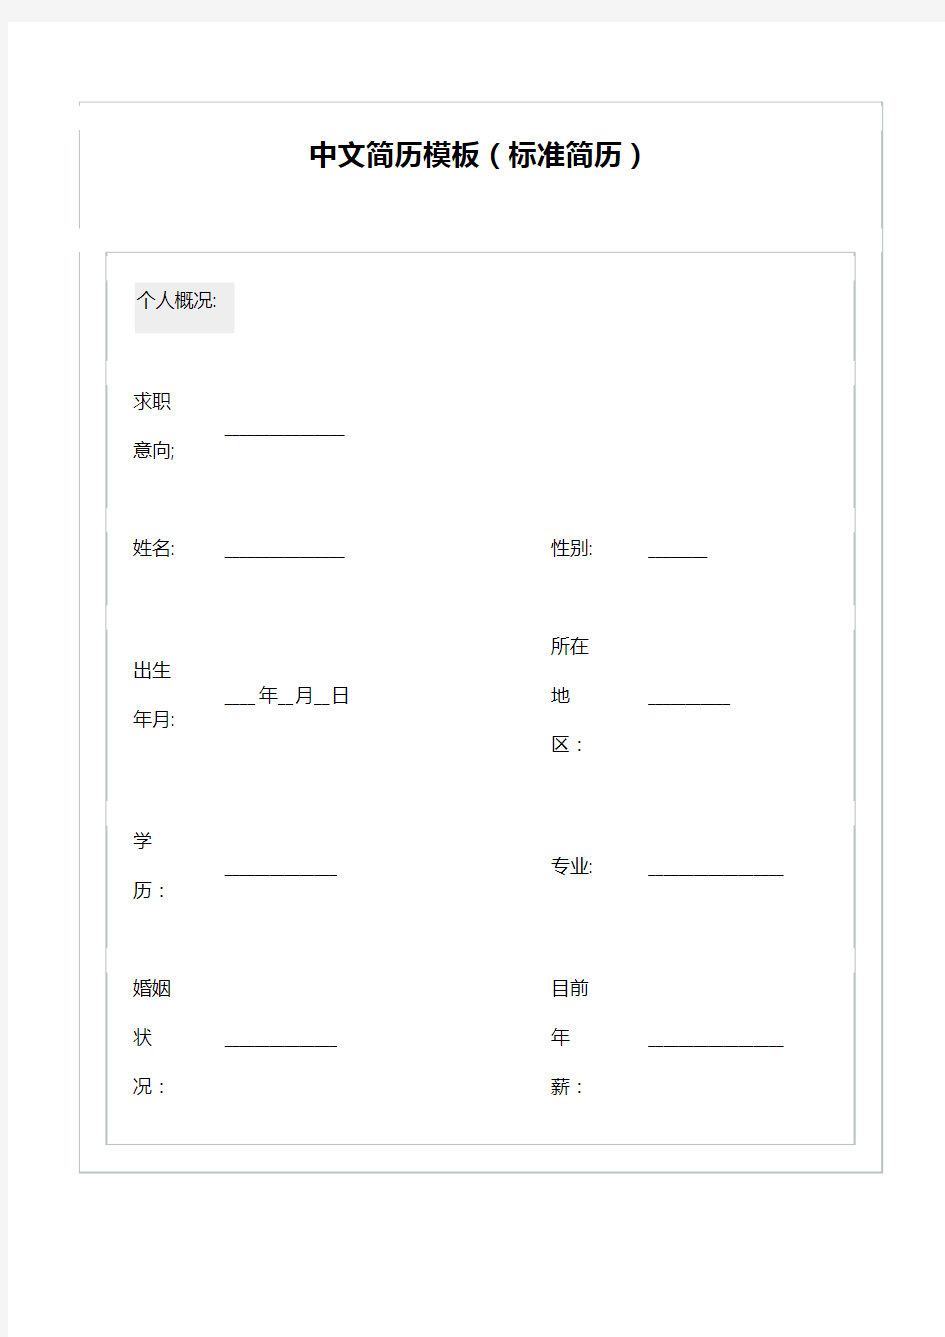 中文简历模板(标准简历)